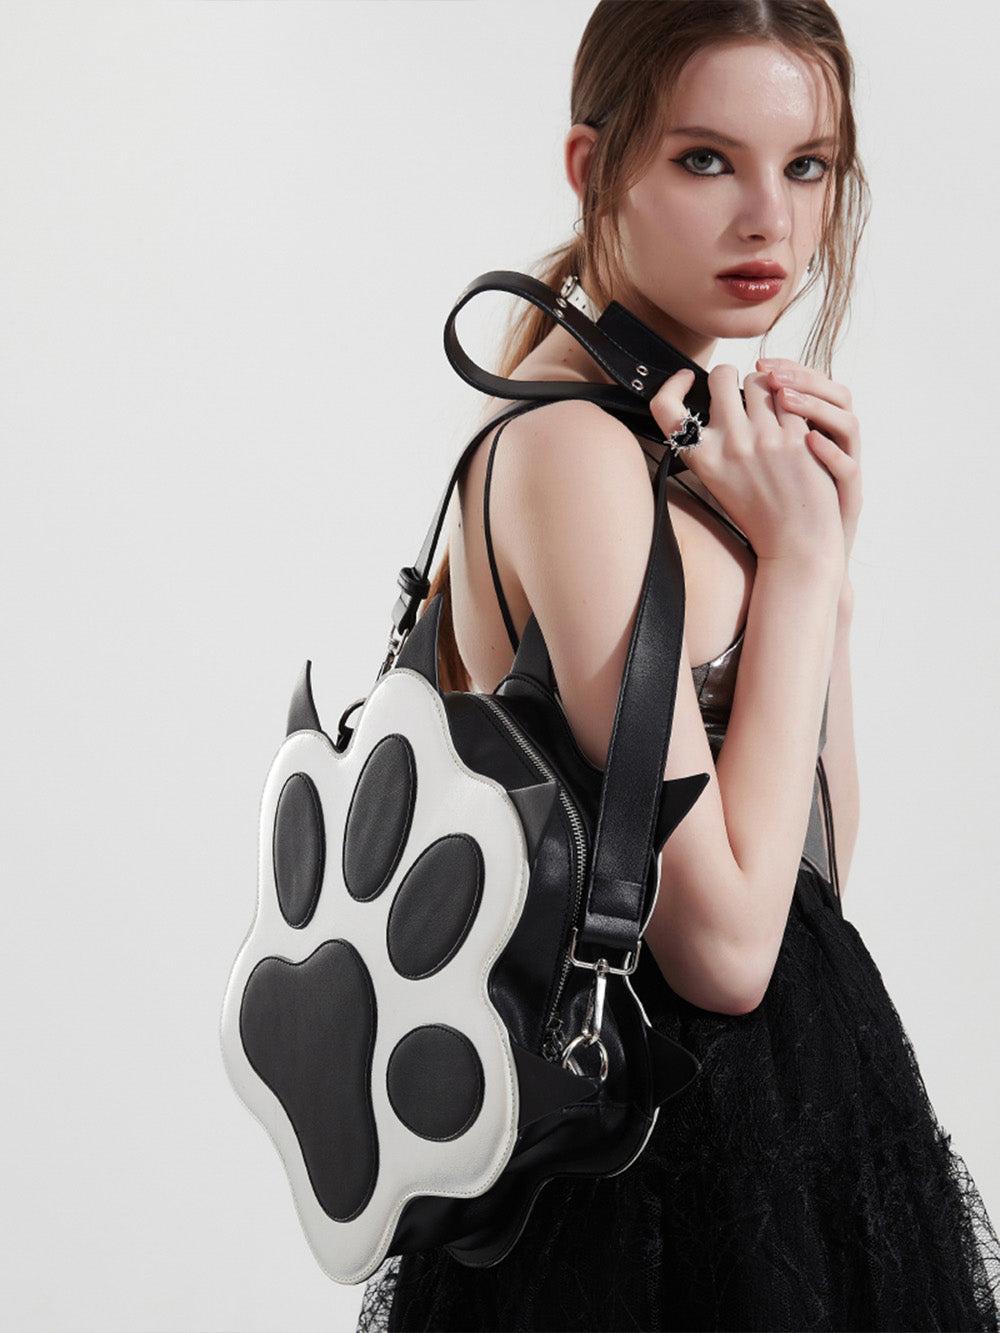 MUKTANK x WHITEHOLE Rebllious Dog Paw Shaped Leather Backpack